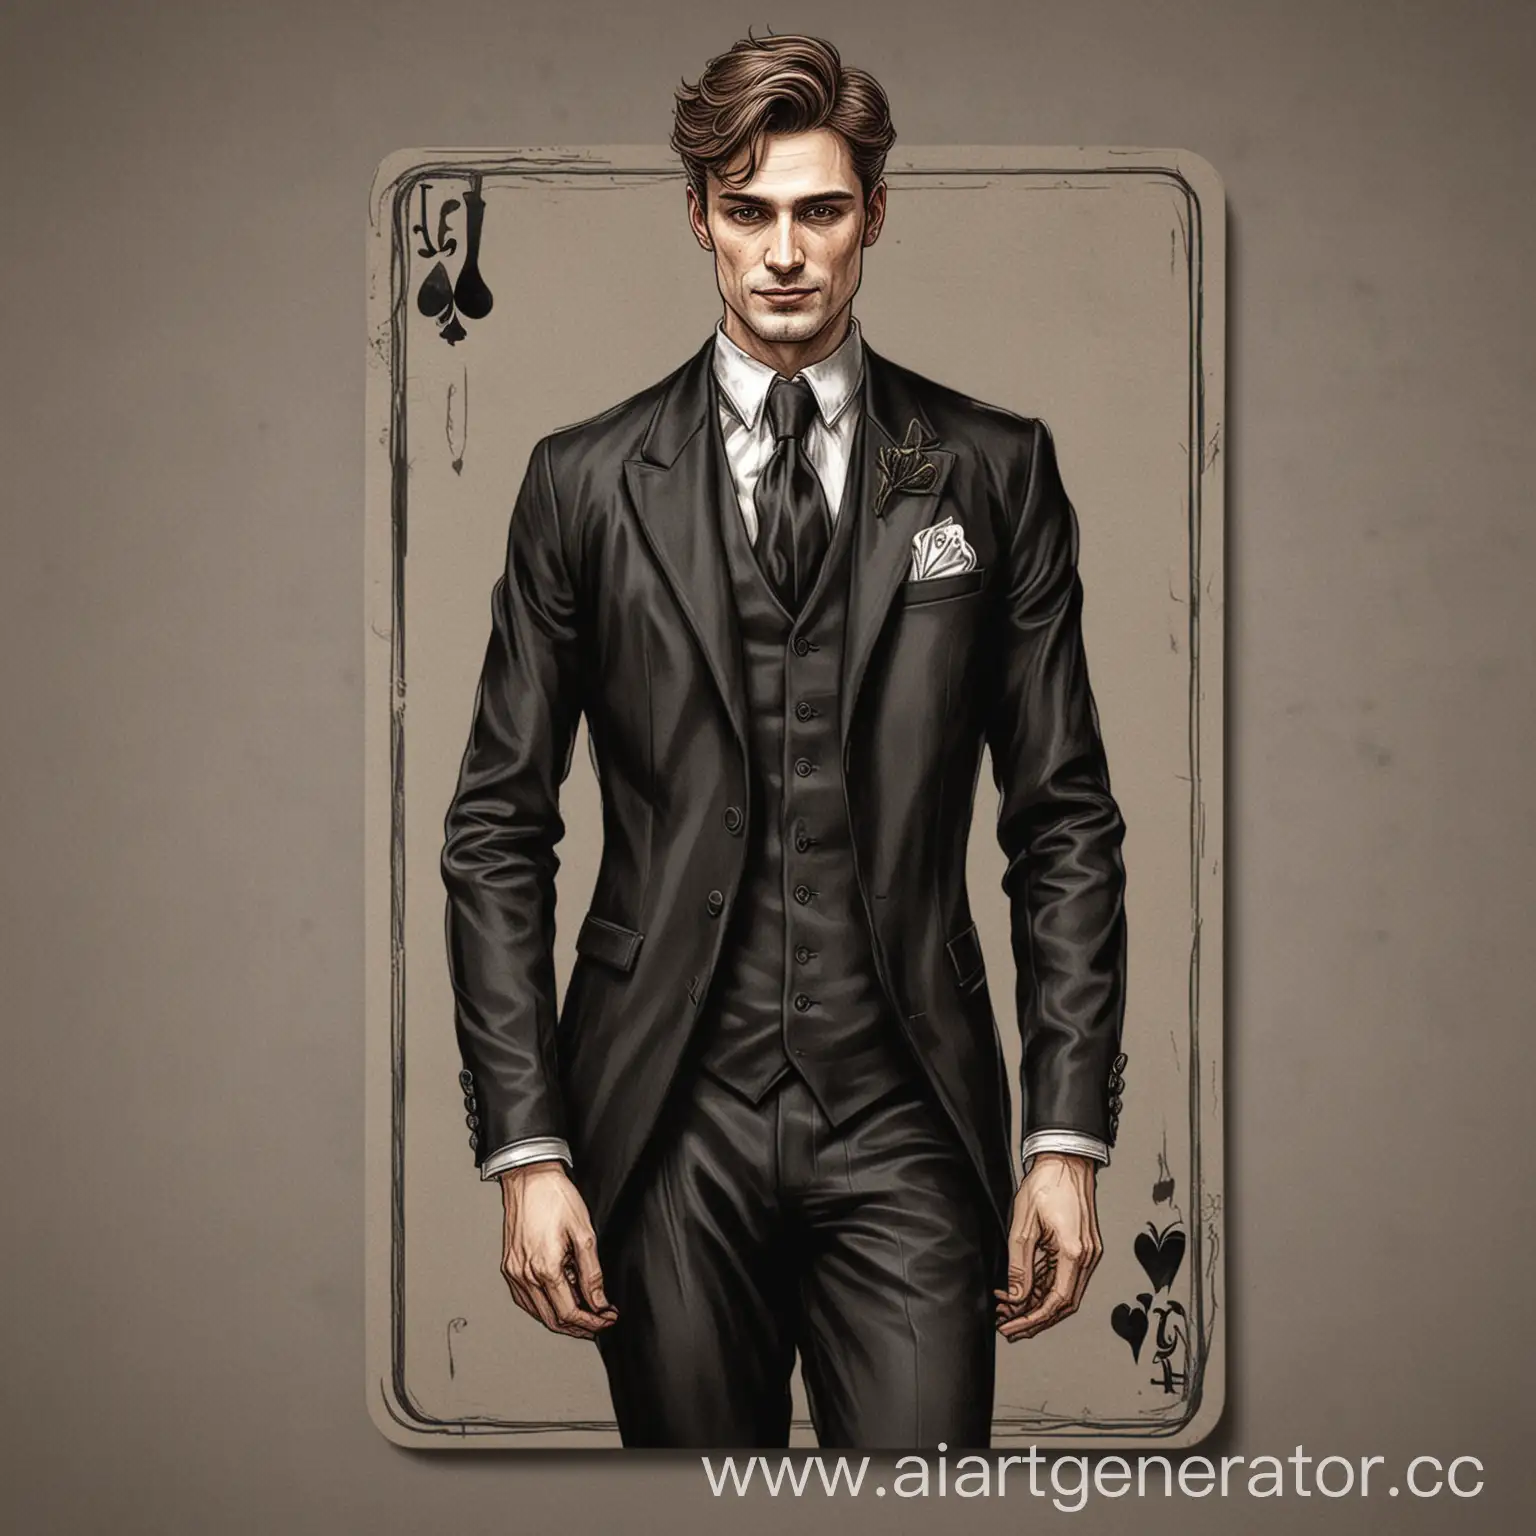 Jack-Playing-Card-Elegant-Groom-in-Black-Suit